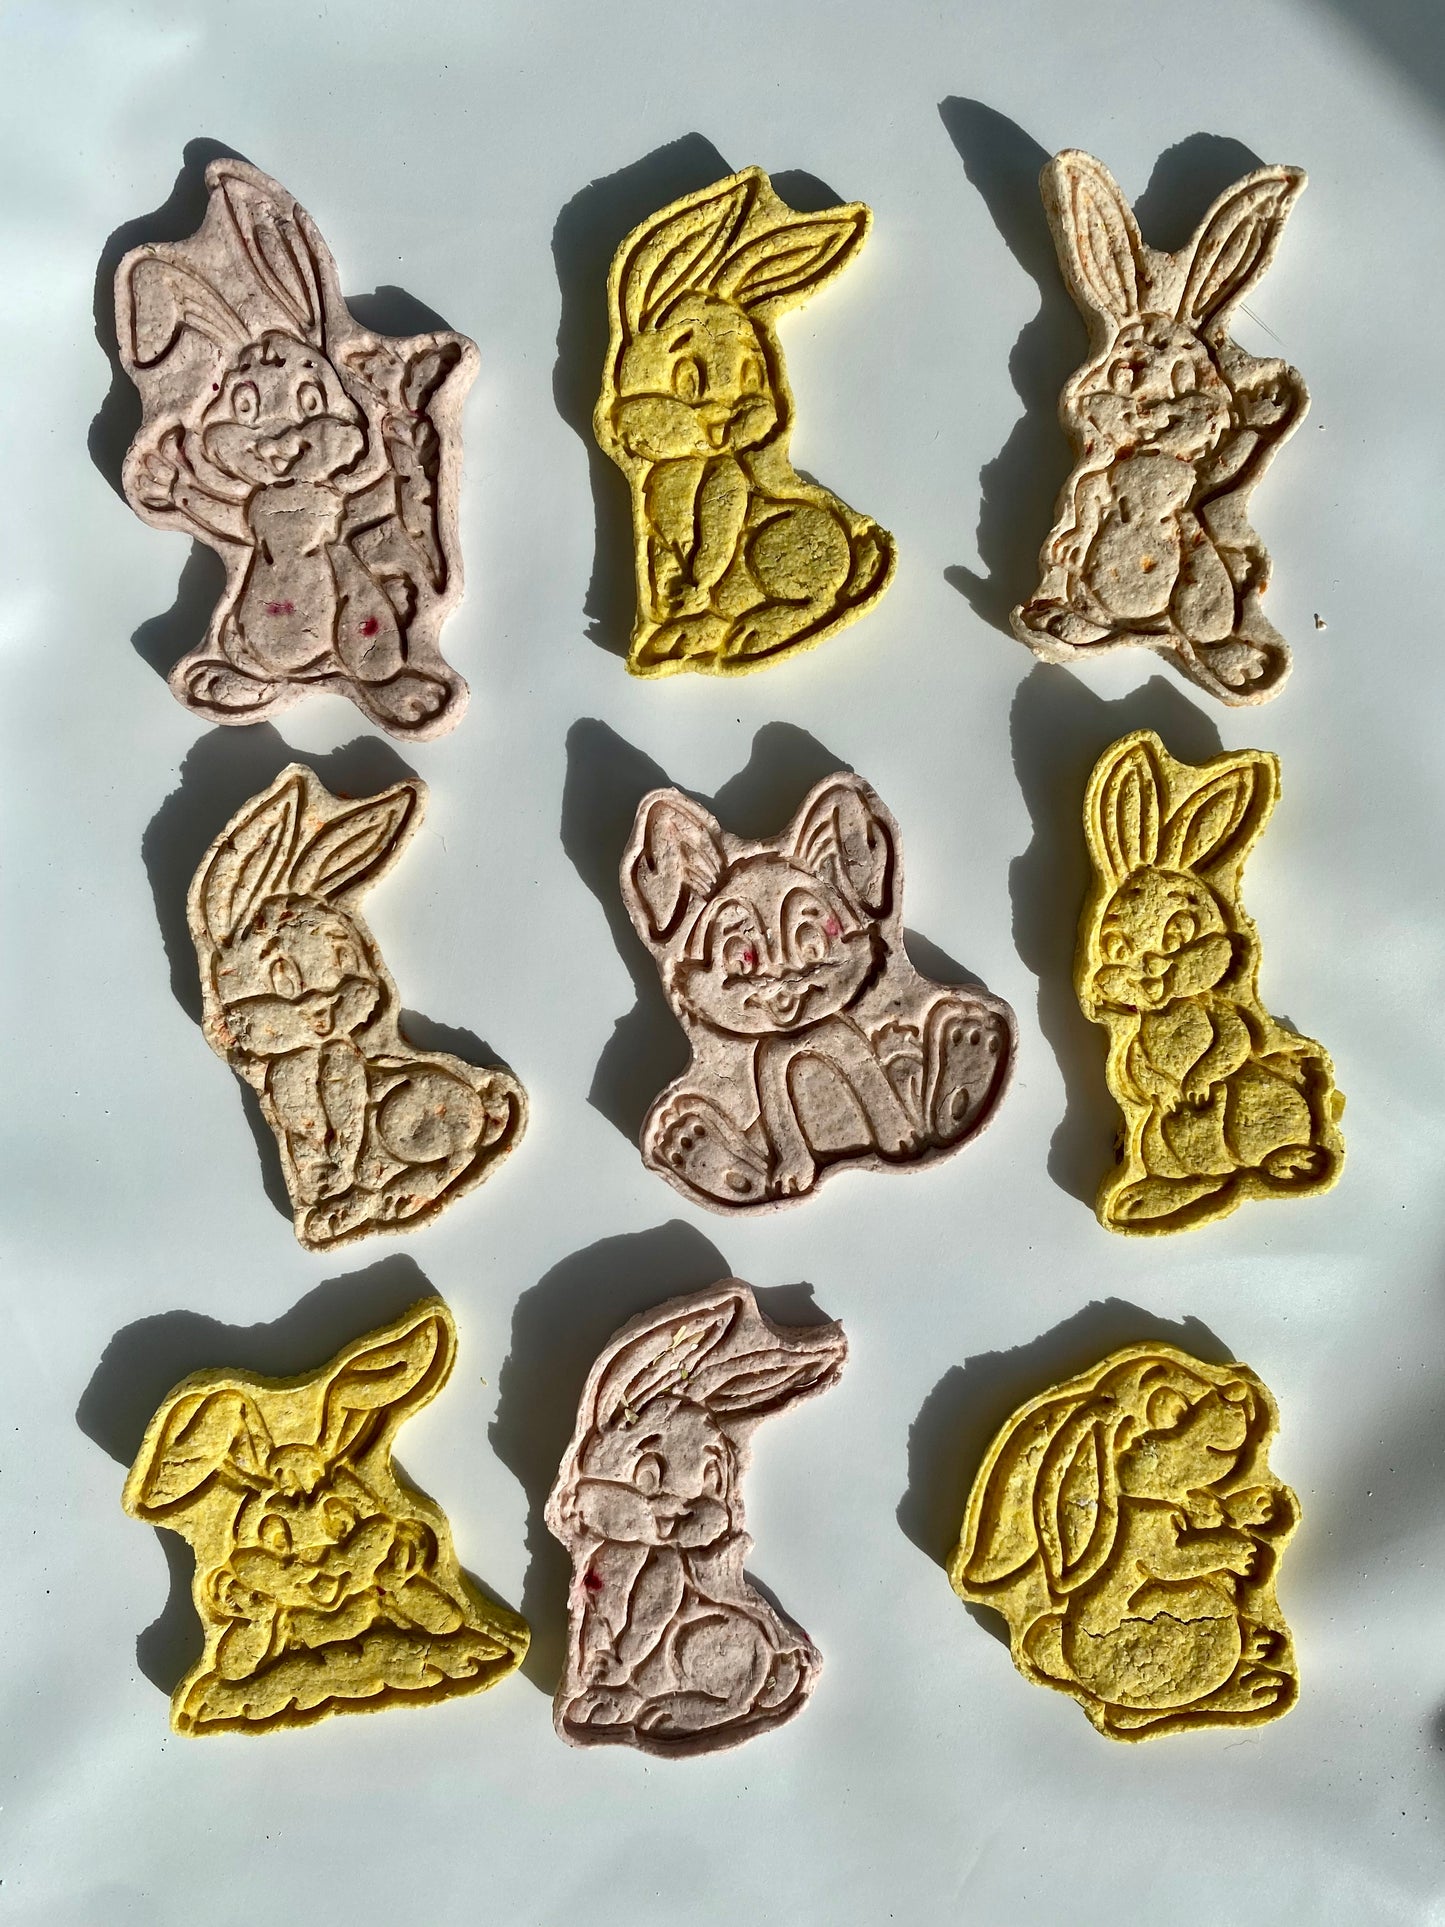 Bunny shaped treats